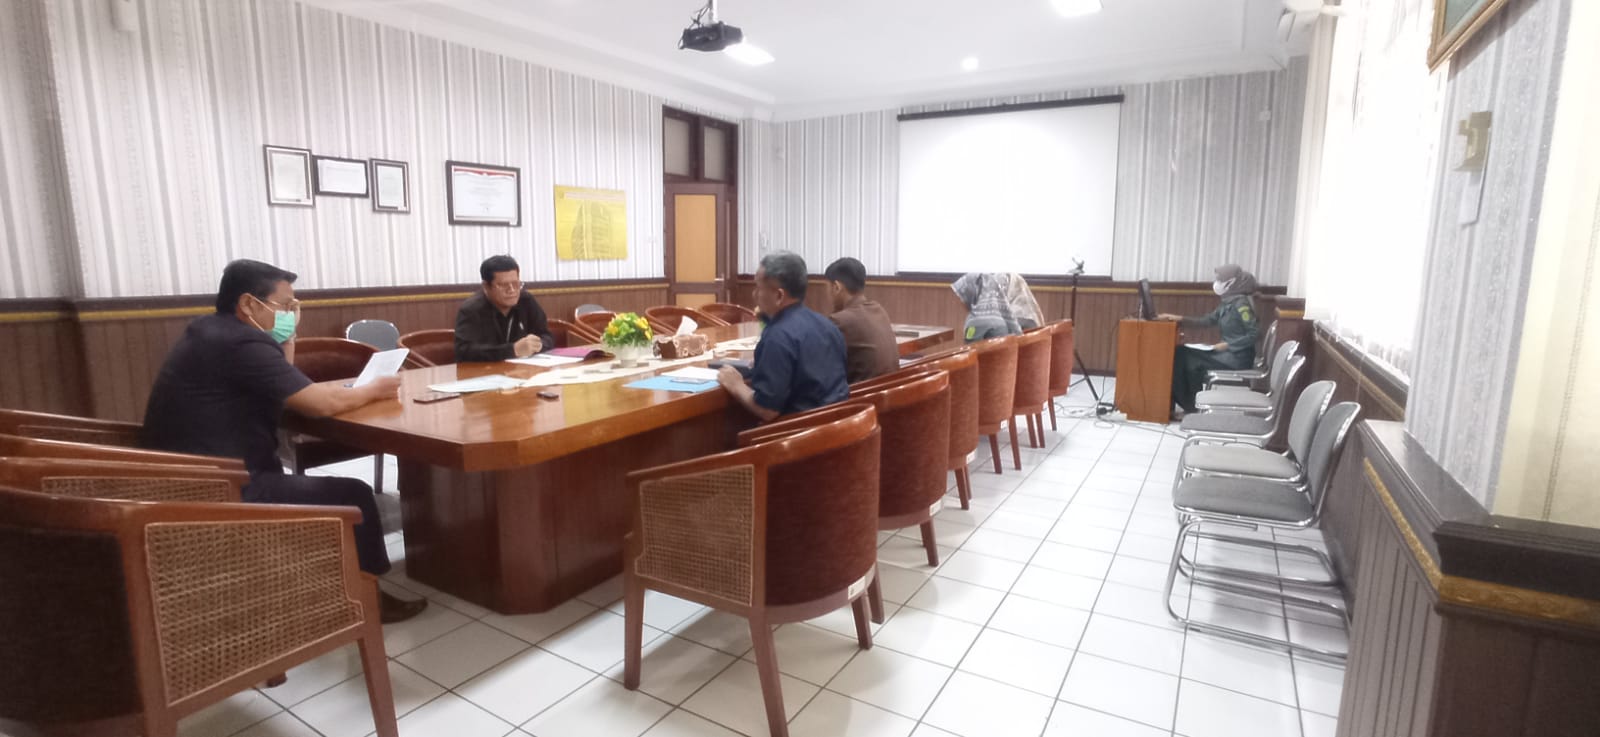 Rapat Tim Document Control APM, ZI dan SMAP Pengadilan Negeri Yogyakarta